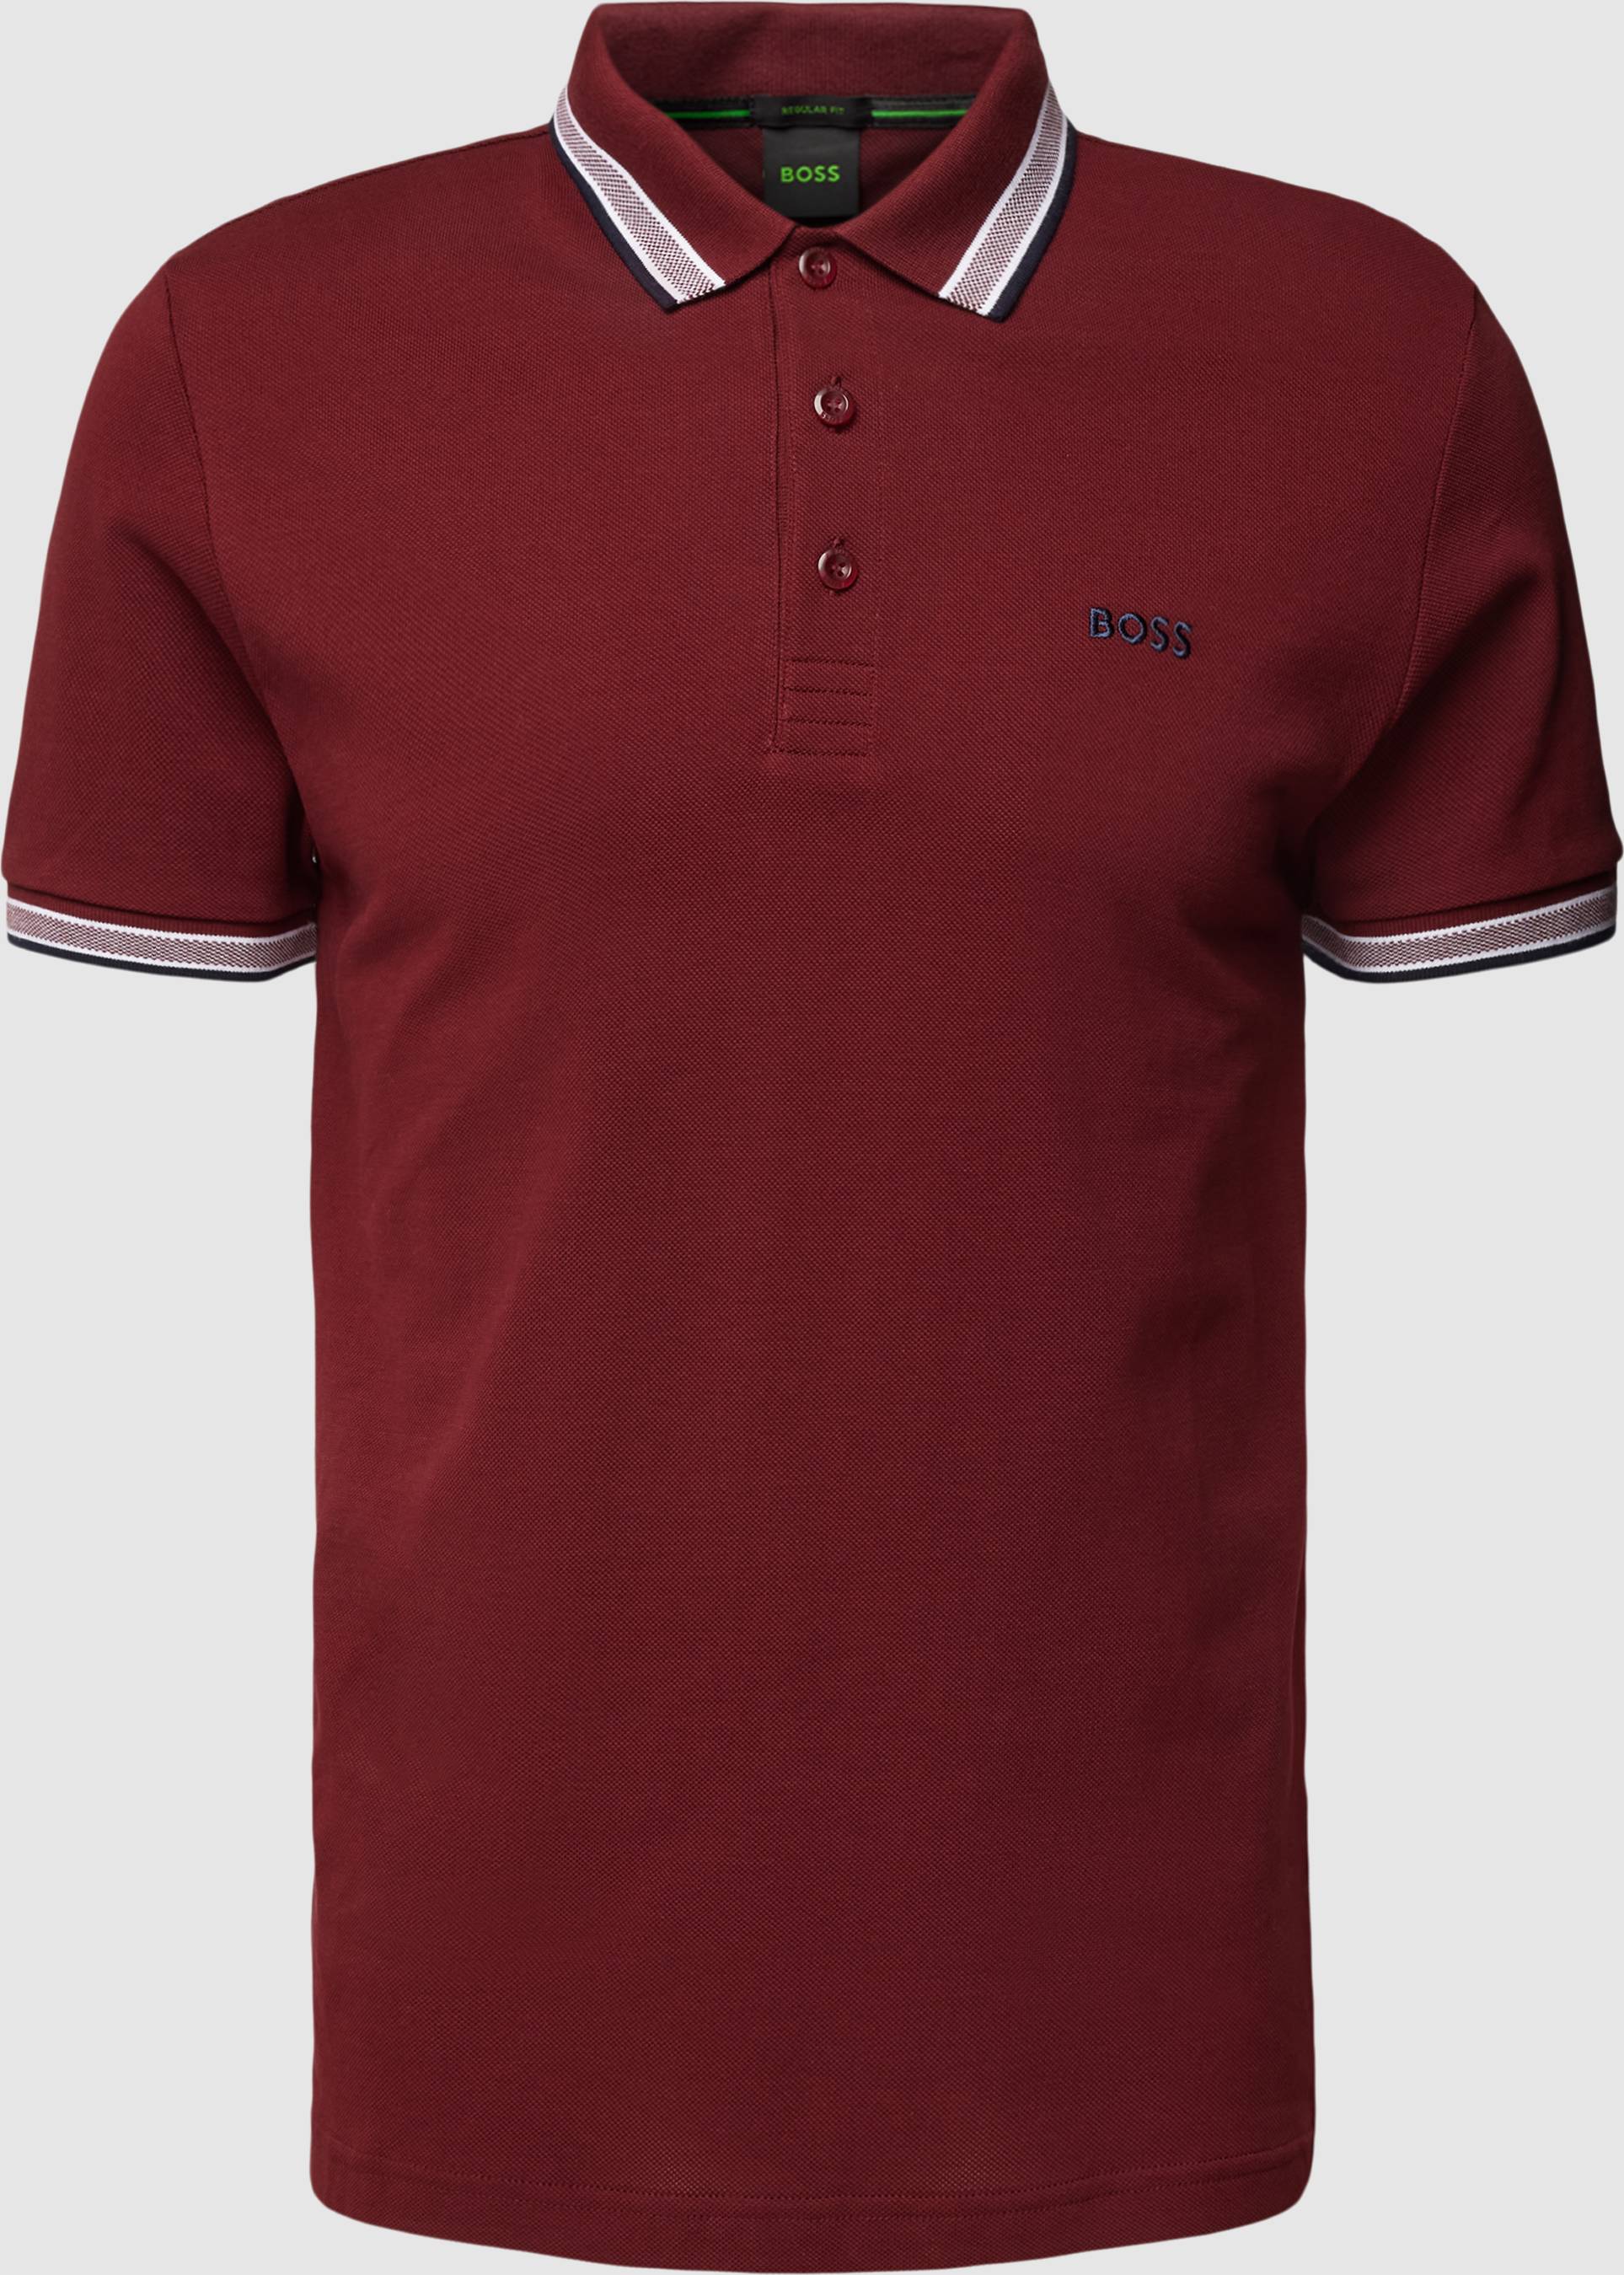 HUGO BOSS Polo T-shirt, Rød • Find den bedste pris